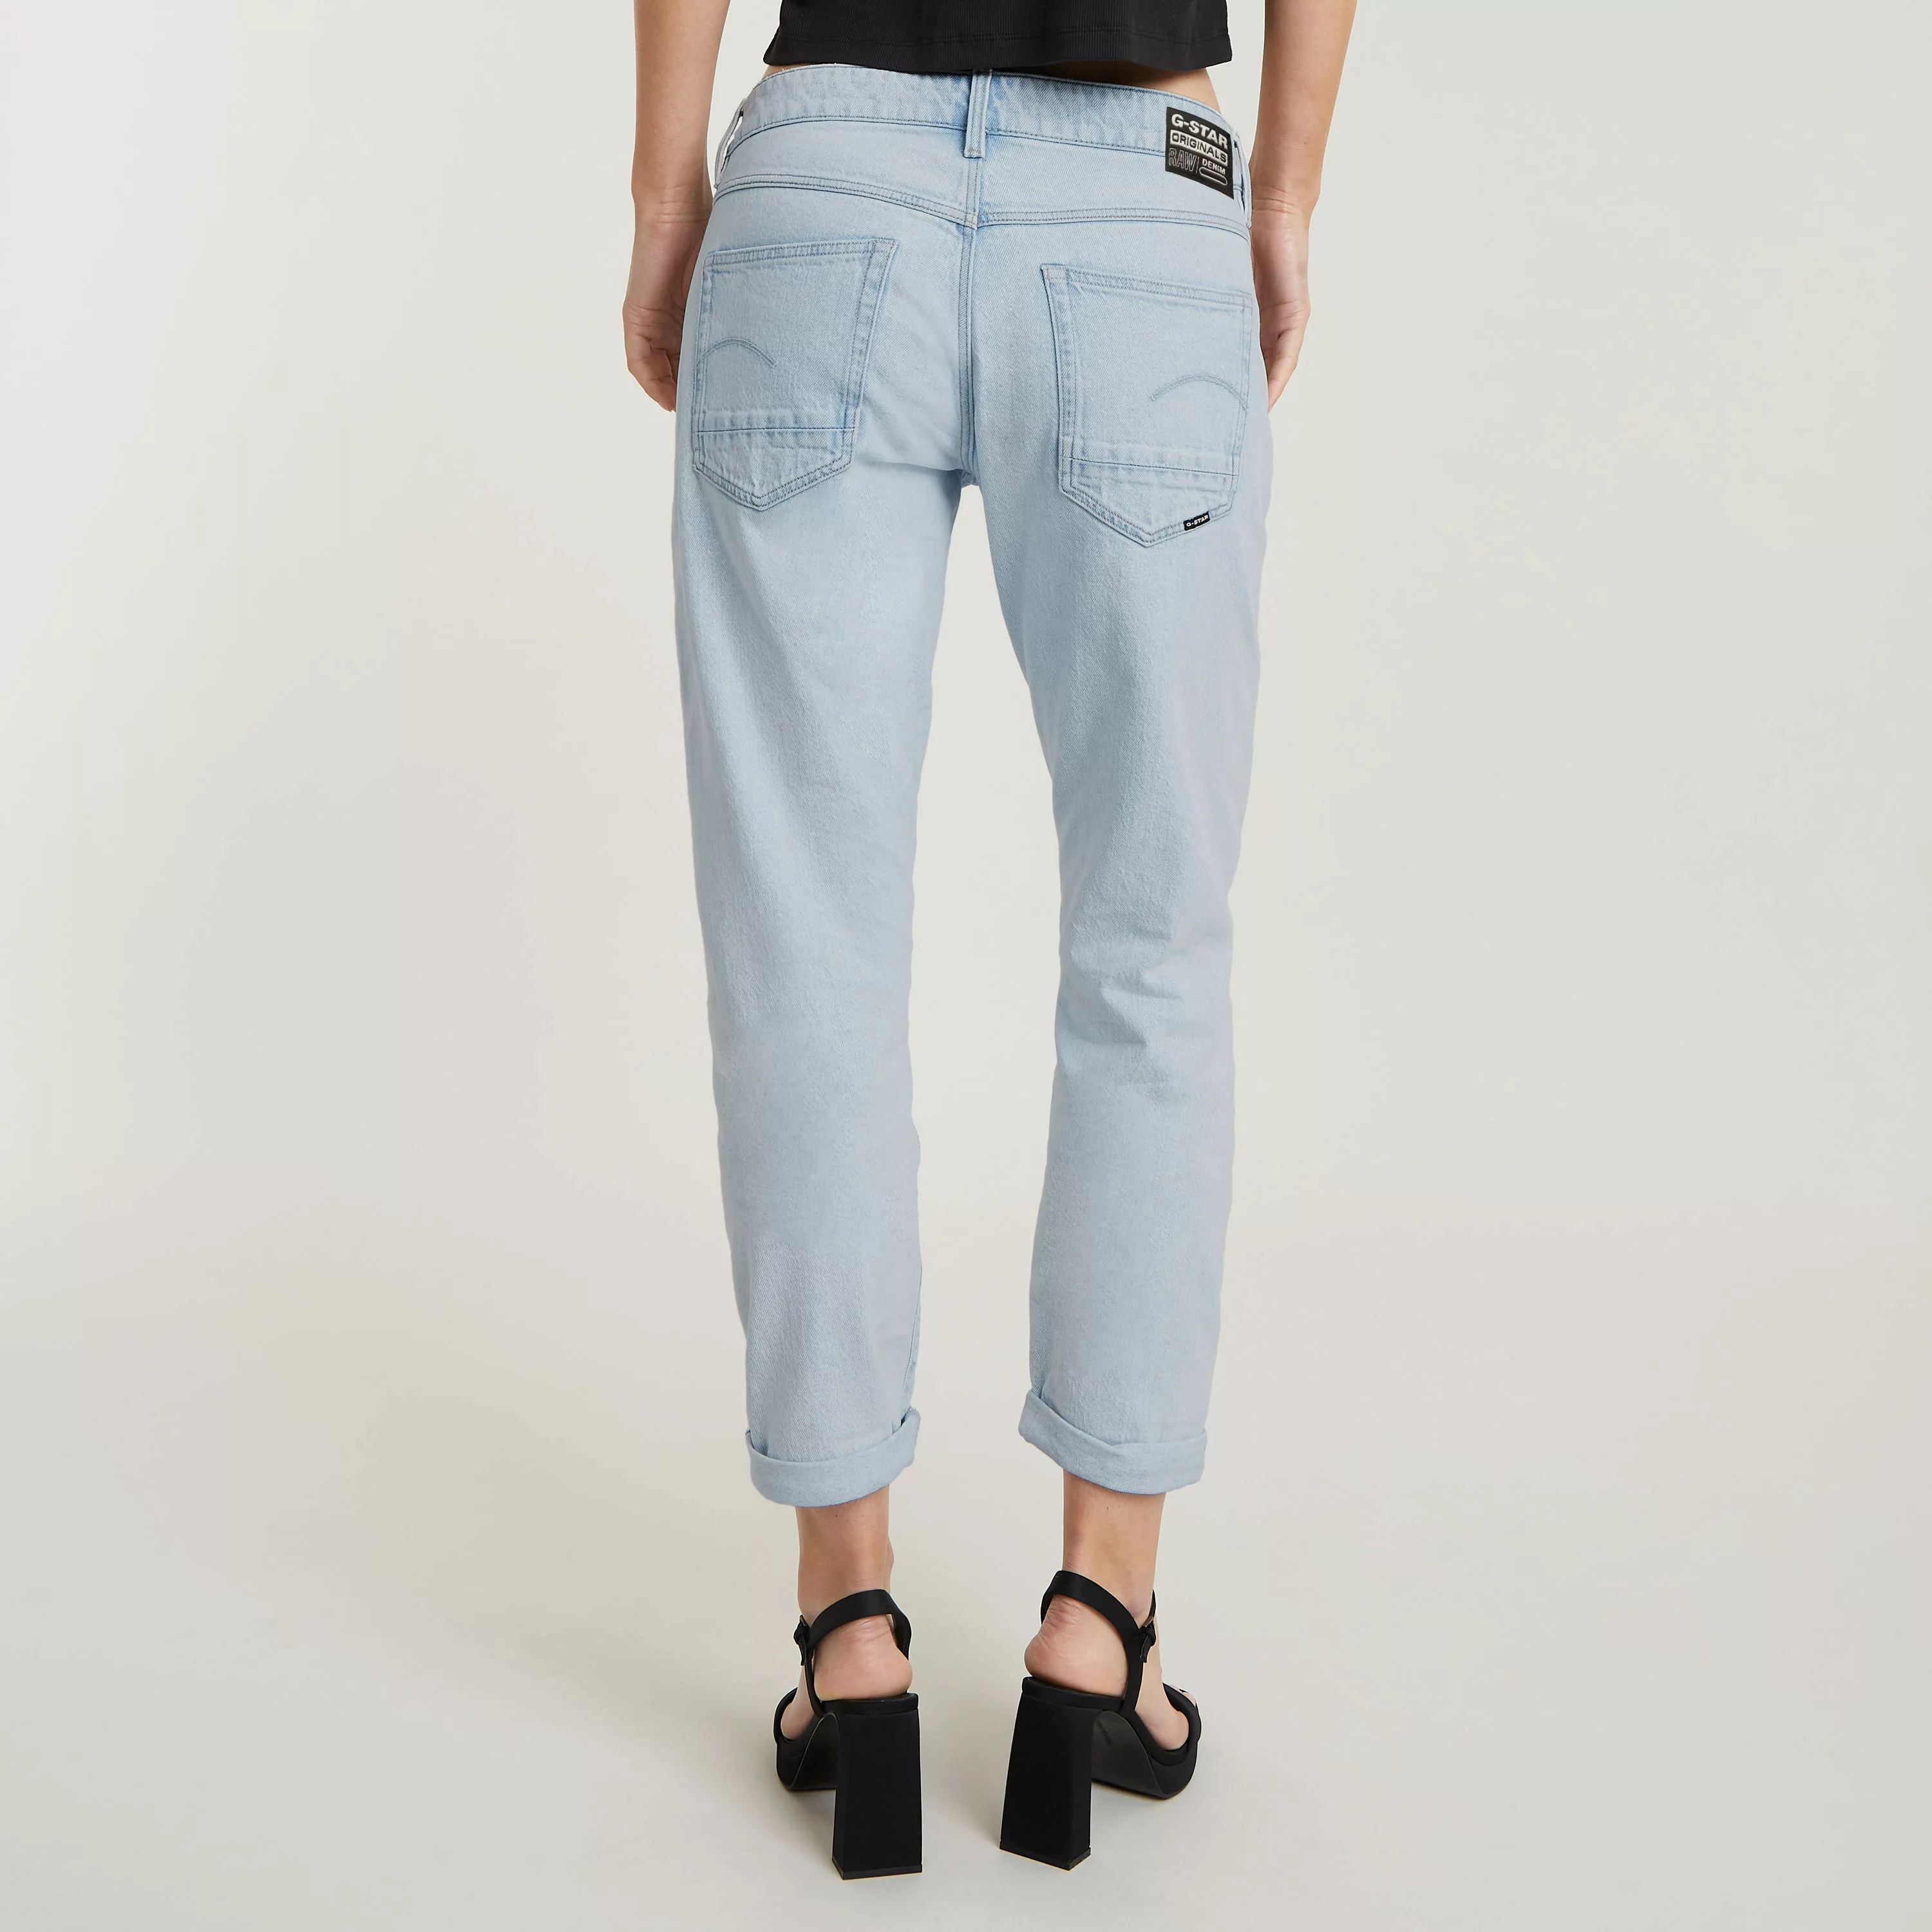 G-Star RAW Boyfriend-Jeans "Kate", Baumwollstretch Denim Qualität für hohen günstig online kaufen